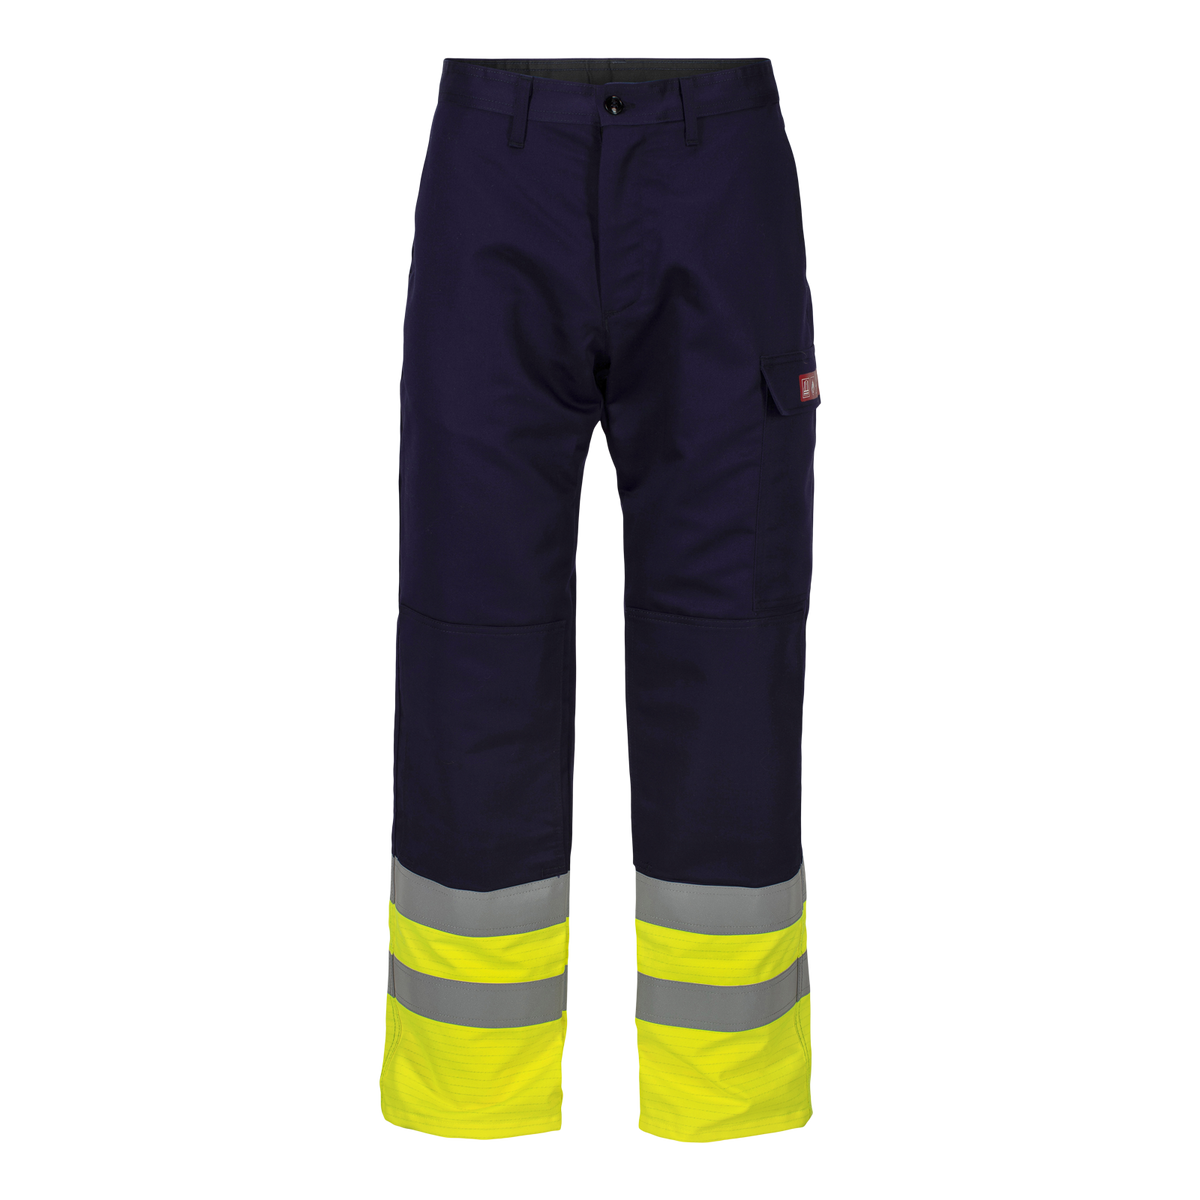 Aksla flammehemmende bukse med ekstra lange ben, klasse 1 (2502594)